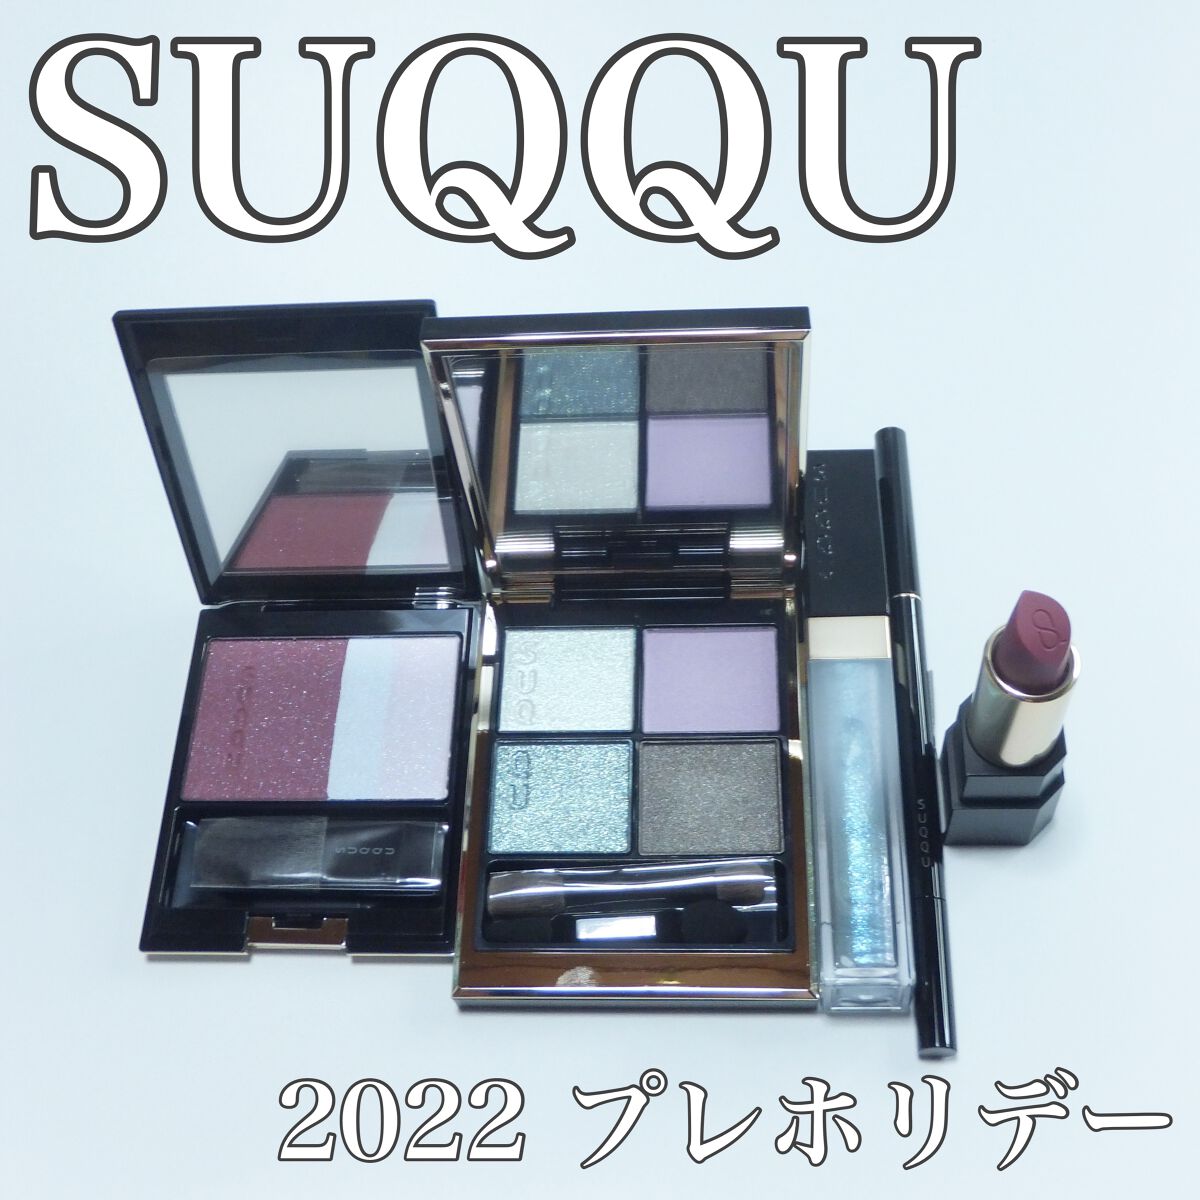 ピュア カラー ブラッシュ｜SUQQUを使った口コミ - SUQQU 2022 プレ ...